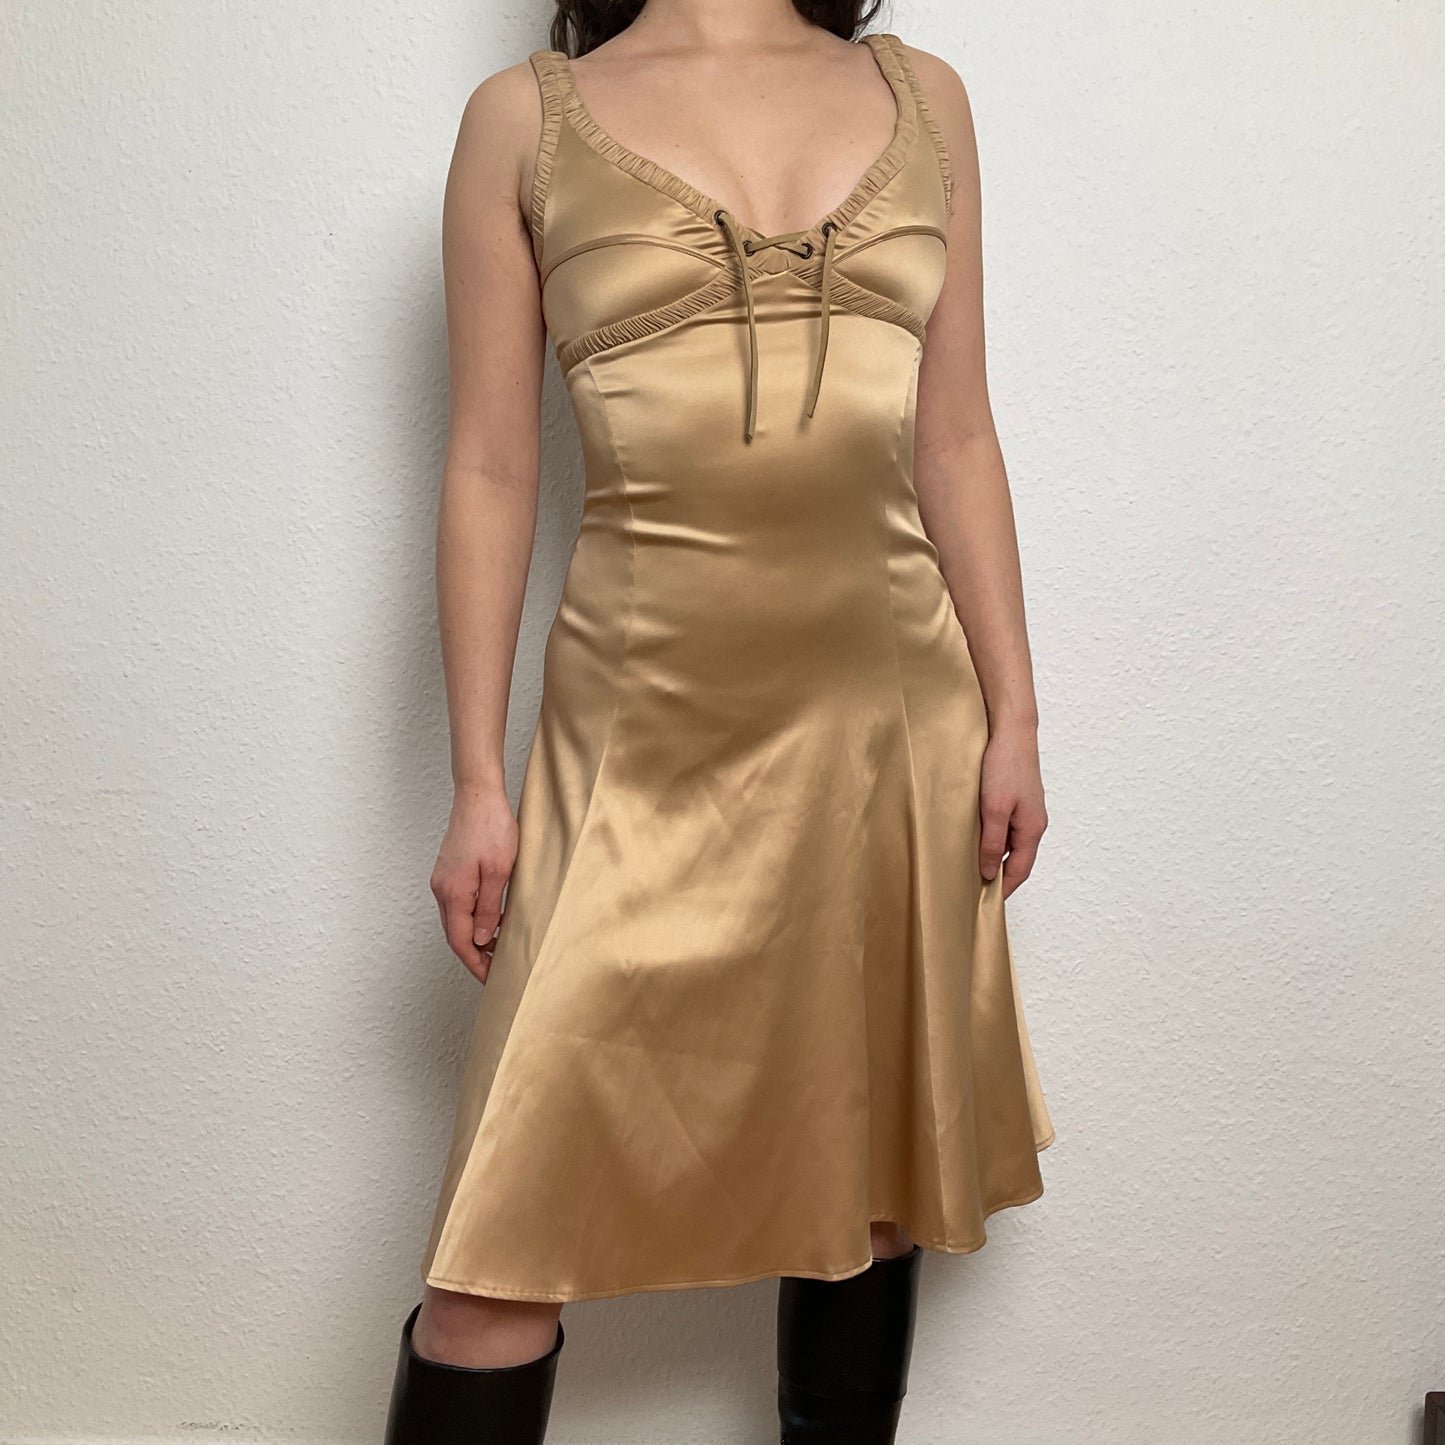 Just Cavalli liquid gold dress